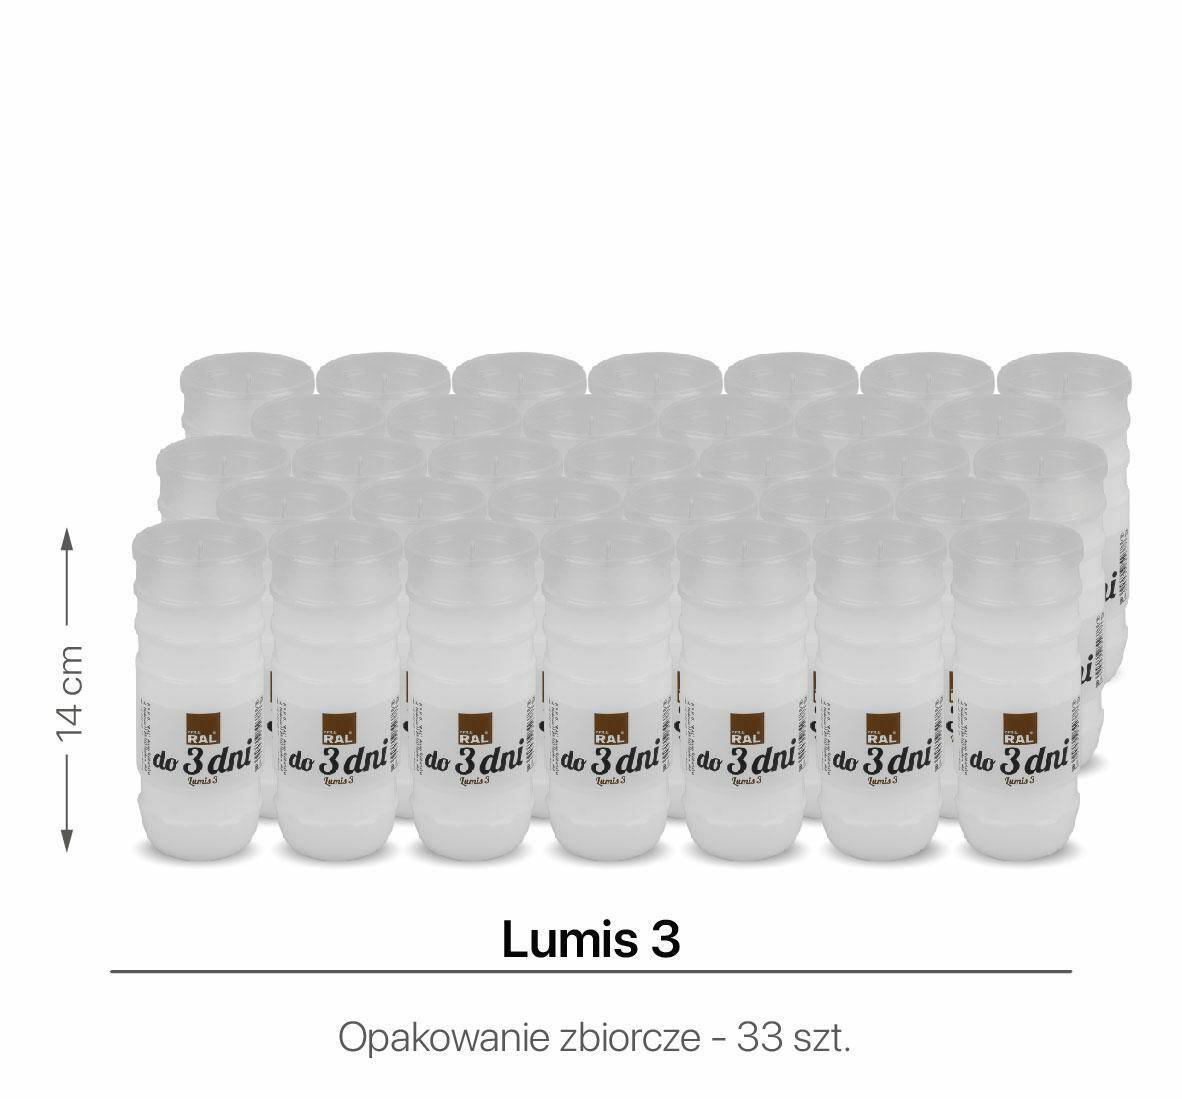 Wkłady do zniczy Lumis 3 14 cm (Zdjęcie 1)